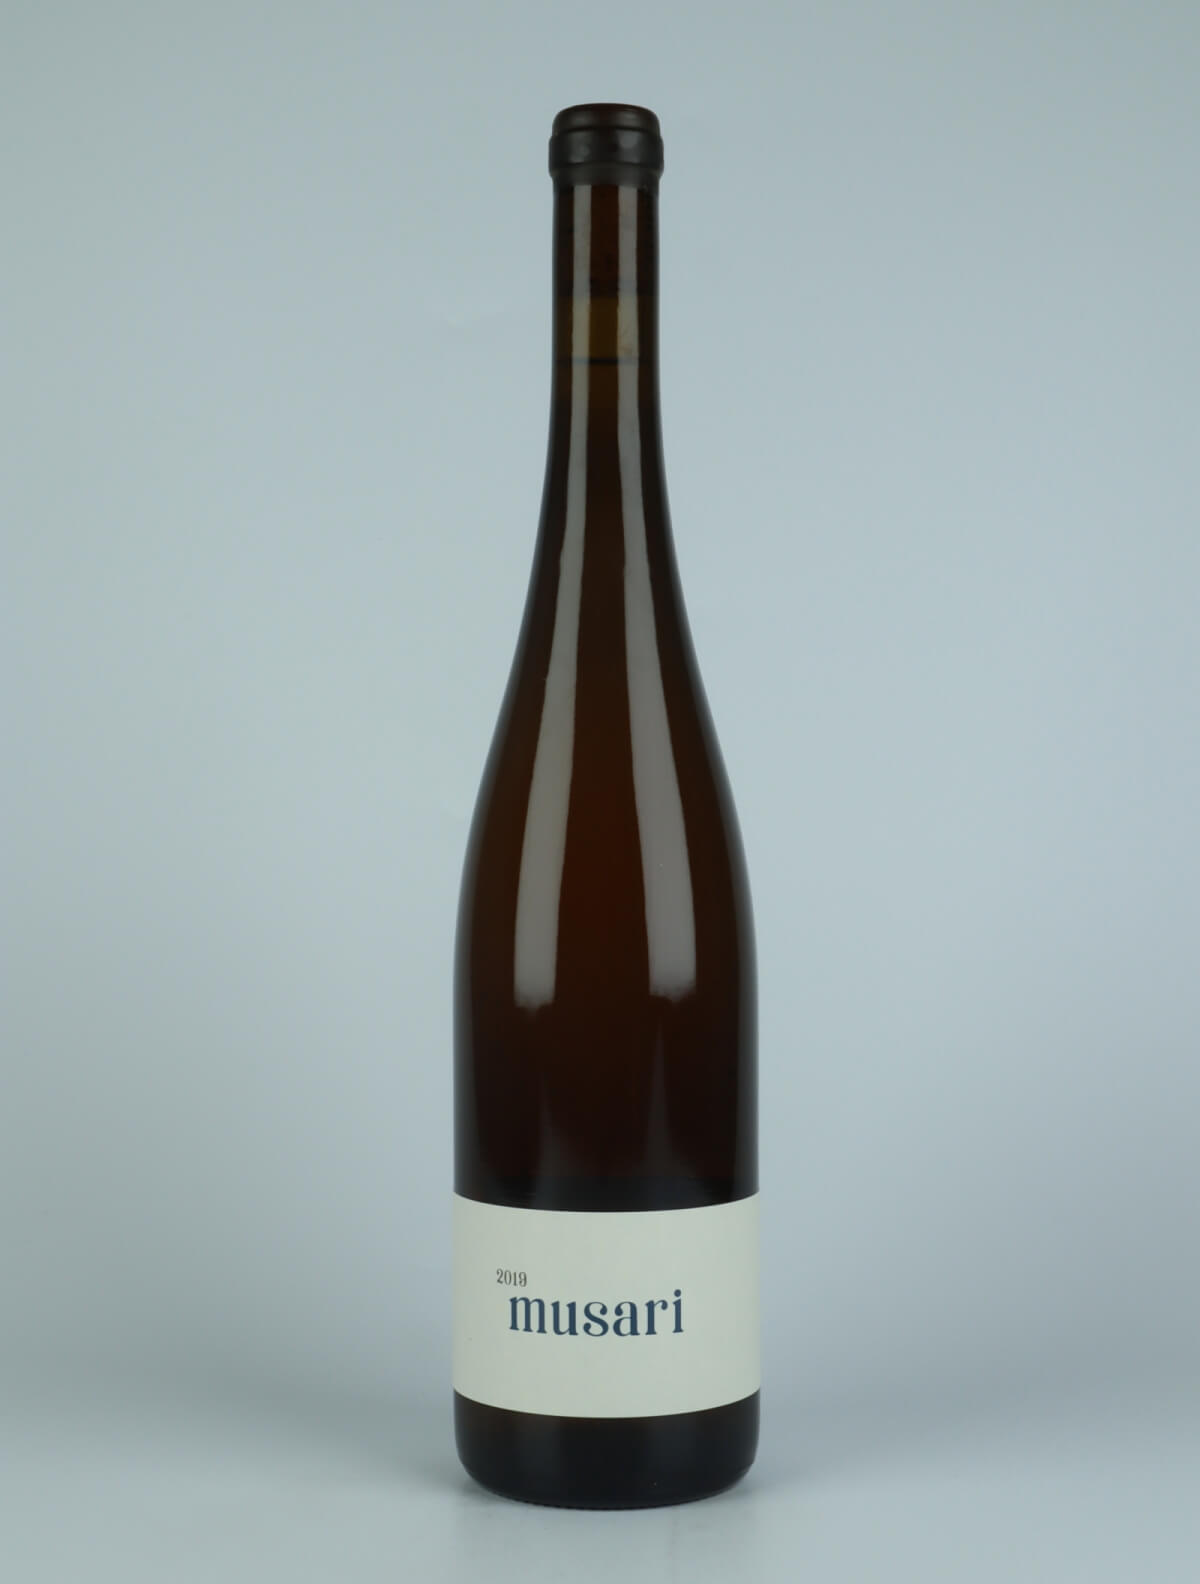 En flaske 2019 Musari Hvidvin fra Jakob Tennstedt, Mosel i Tyskland